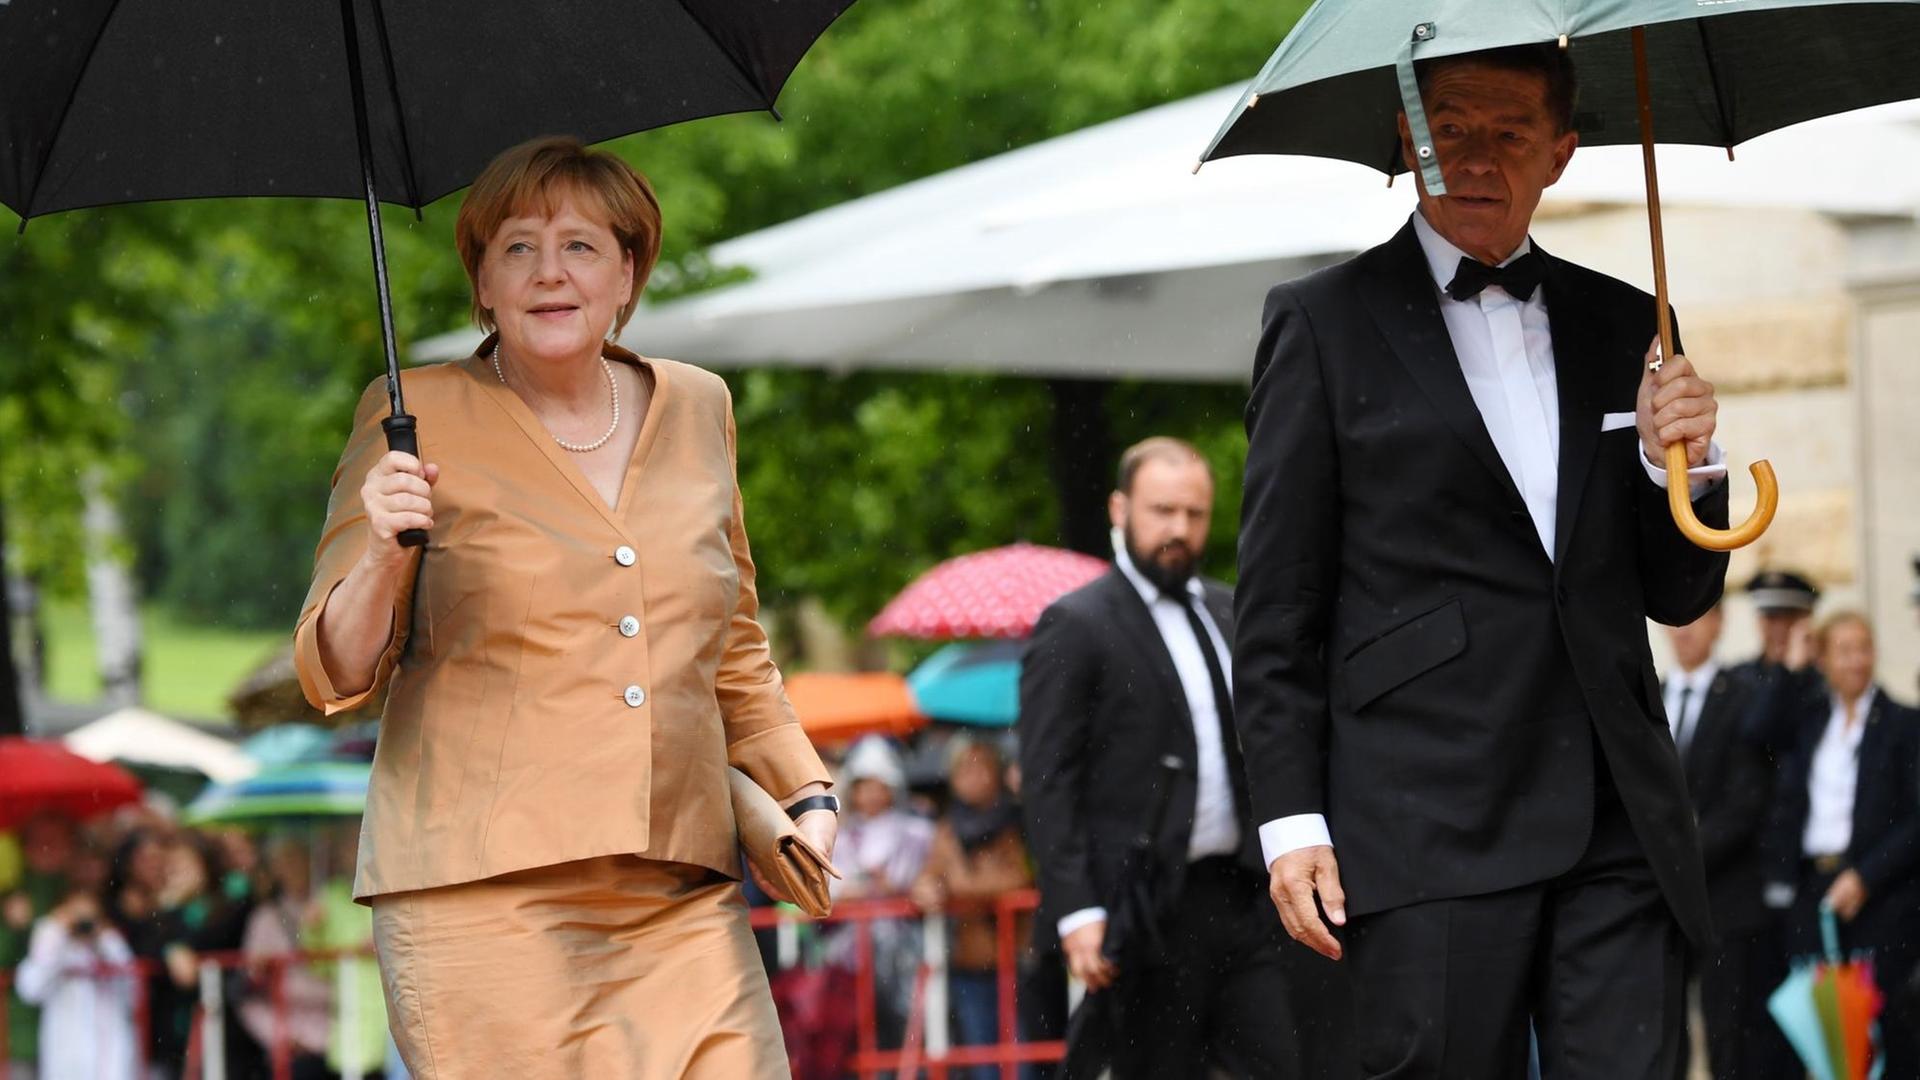 Die Bundeskanzlerin Angela Merkel (CDU) mit ihrem Mann Joachim Sauer am 25.07.2017 in Bayreuth (Bayern) zur Eröffnung der Bayreuther Festspiele.